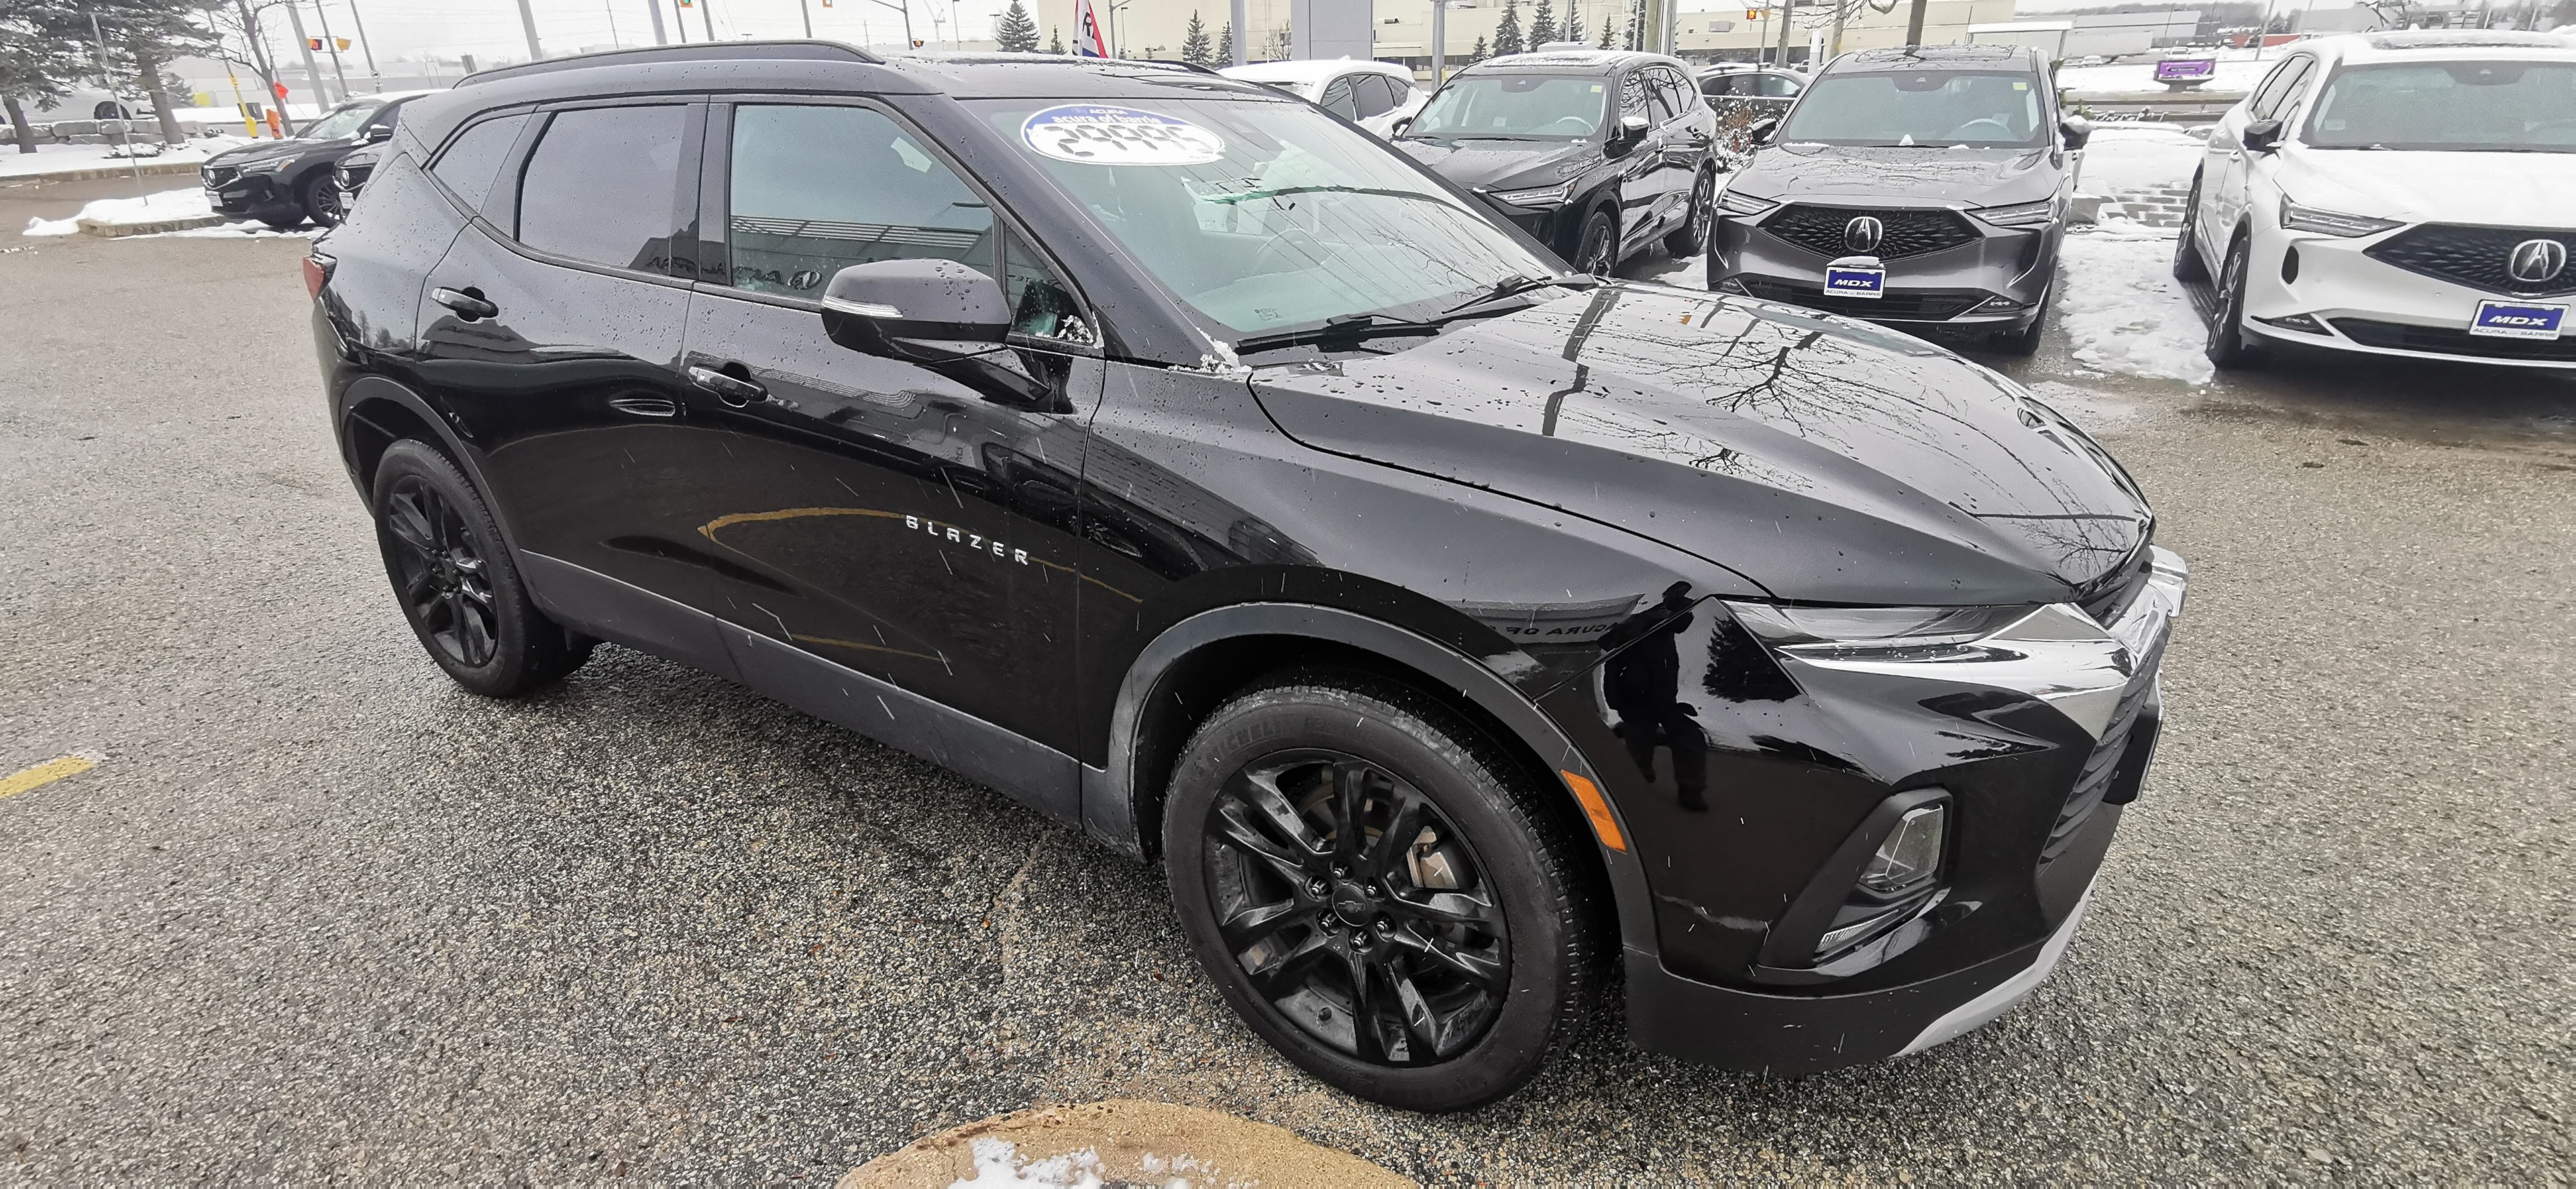 2019 Chevrolet Blazer All Wheel Drive, 4dr 3.6L True North, 84mo @7.99%!